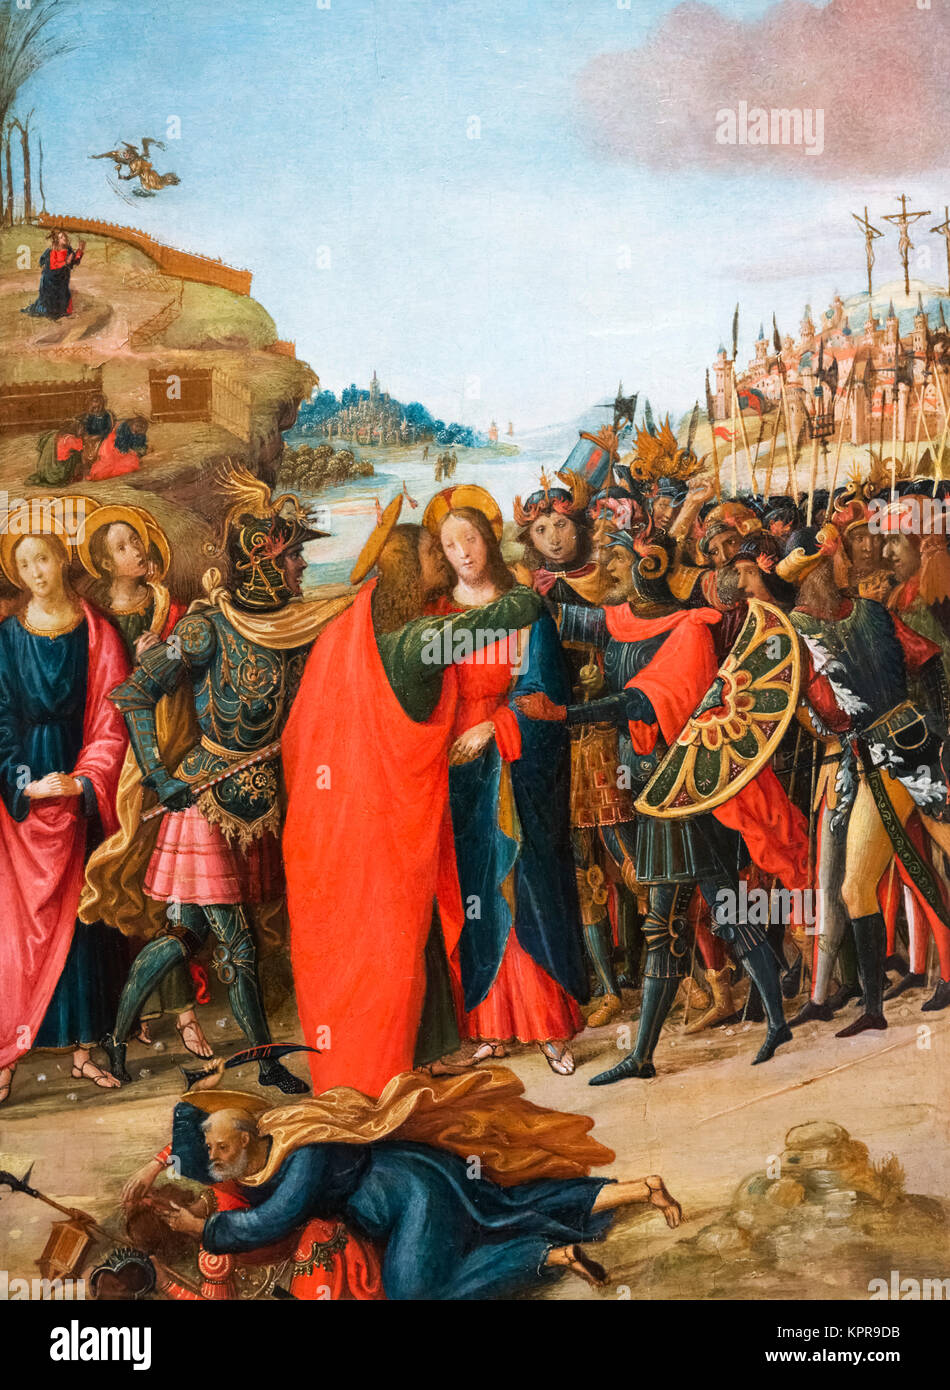 Die Verhaftung von Jesus durch den Maestro di Marradi. Tempera auf Holz, c. 1500-1510. Das Gemälde zeigt Judas Ischariot, Christus der Kuss des Verrats. Stockfoto